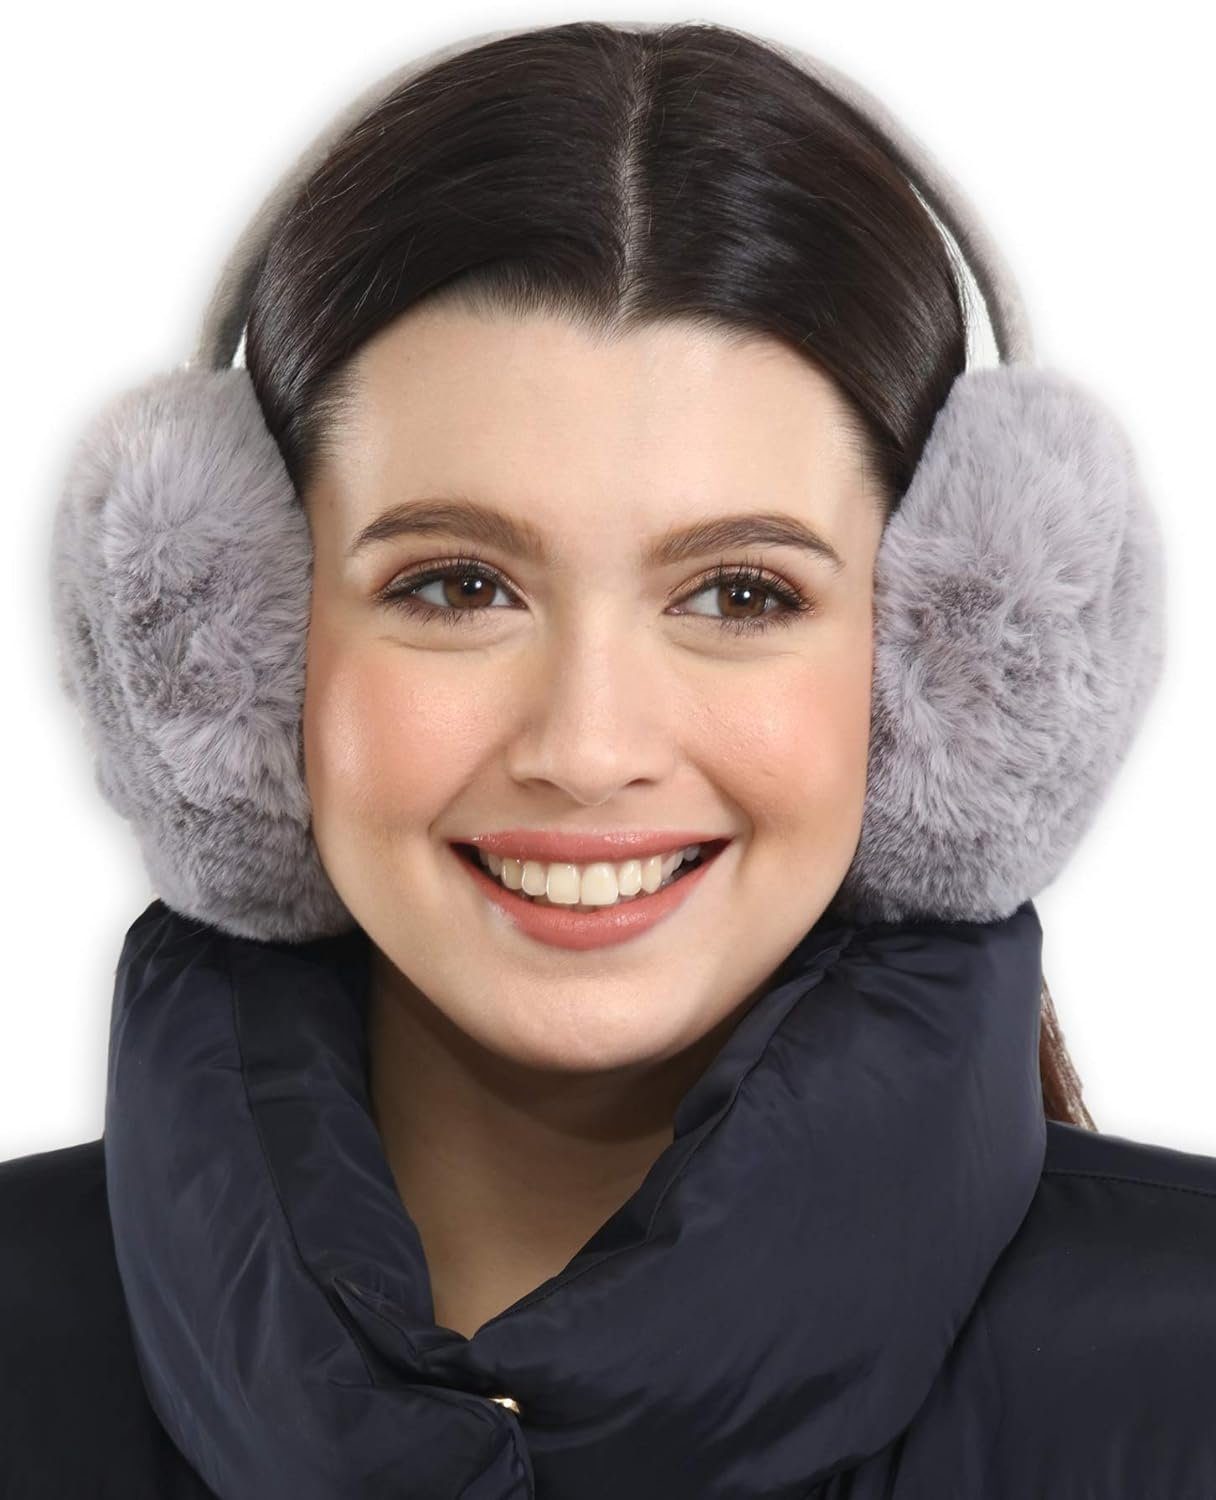 Ohrenwärmer kaltes Opspring Ohrenschützer,Winter-Ohrenwärmer,Ohrenschützer Wetter Grau für